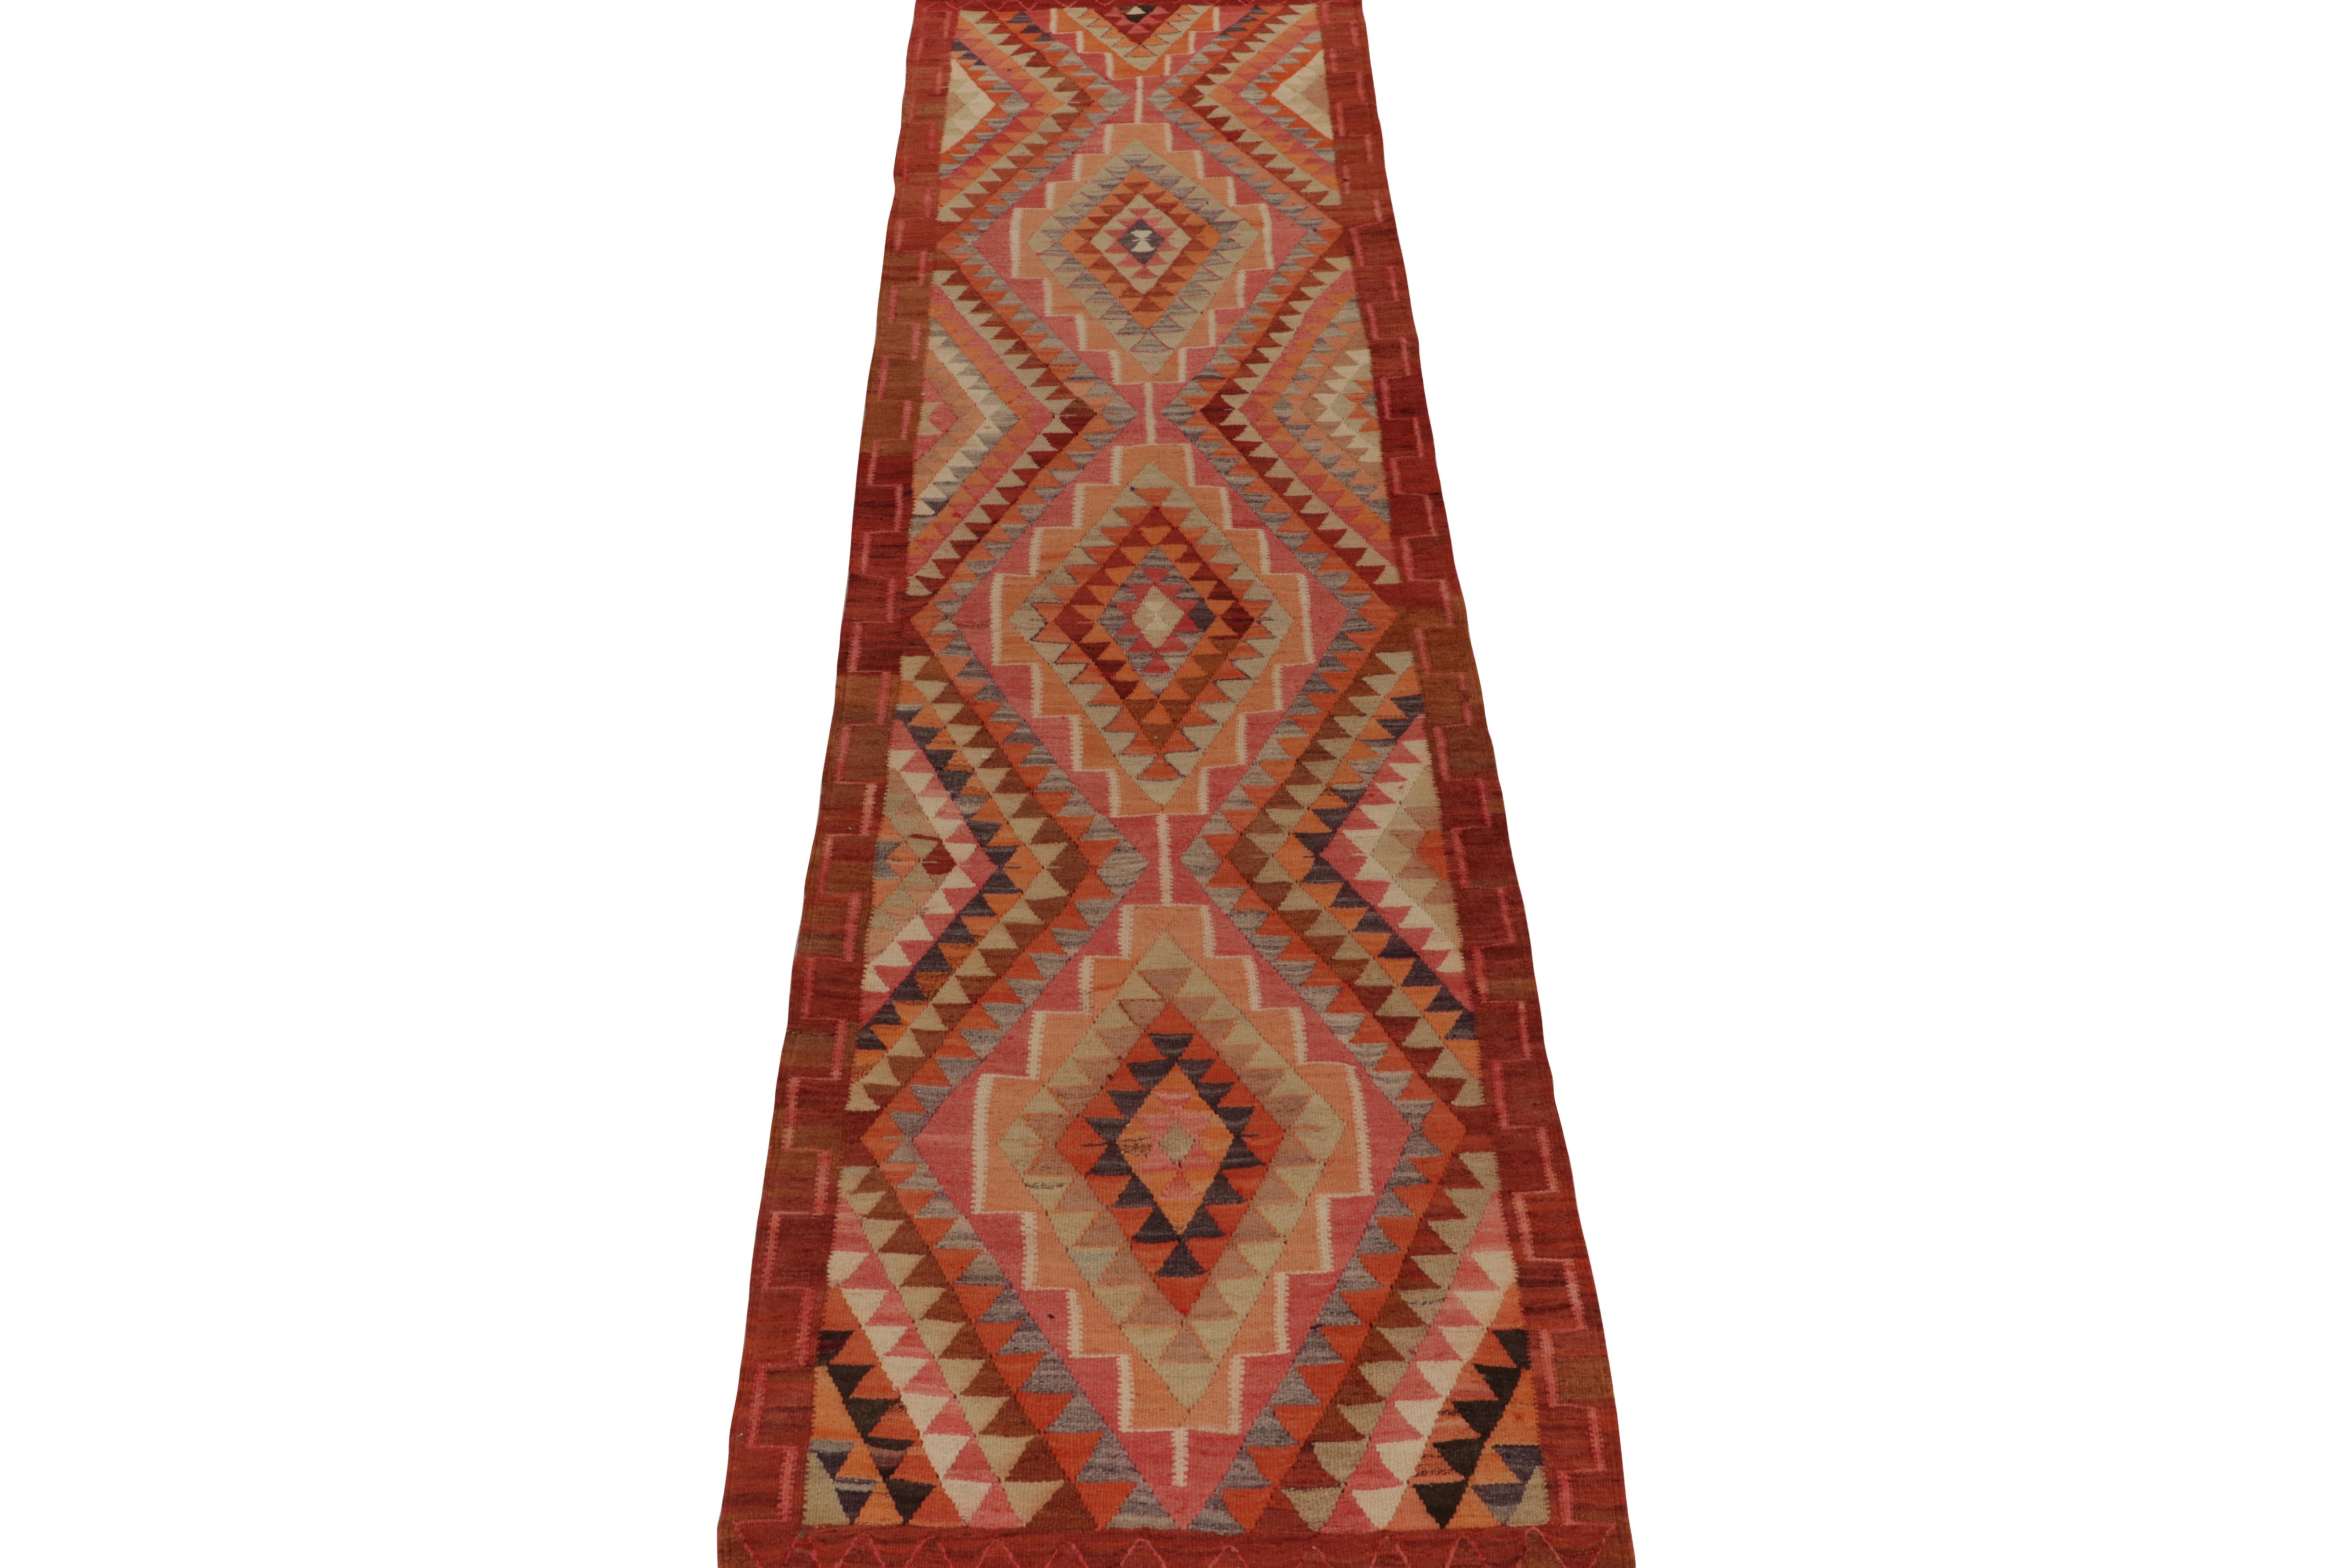 Turkish Vintage Tribal Kilim Runner in Red Brown Orange Geometric Pattern by Rug & Kilim For Sale